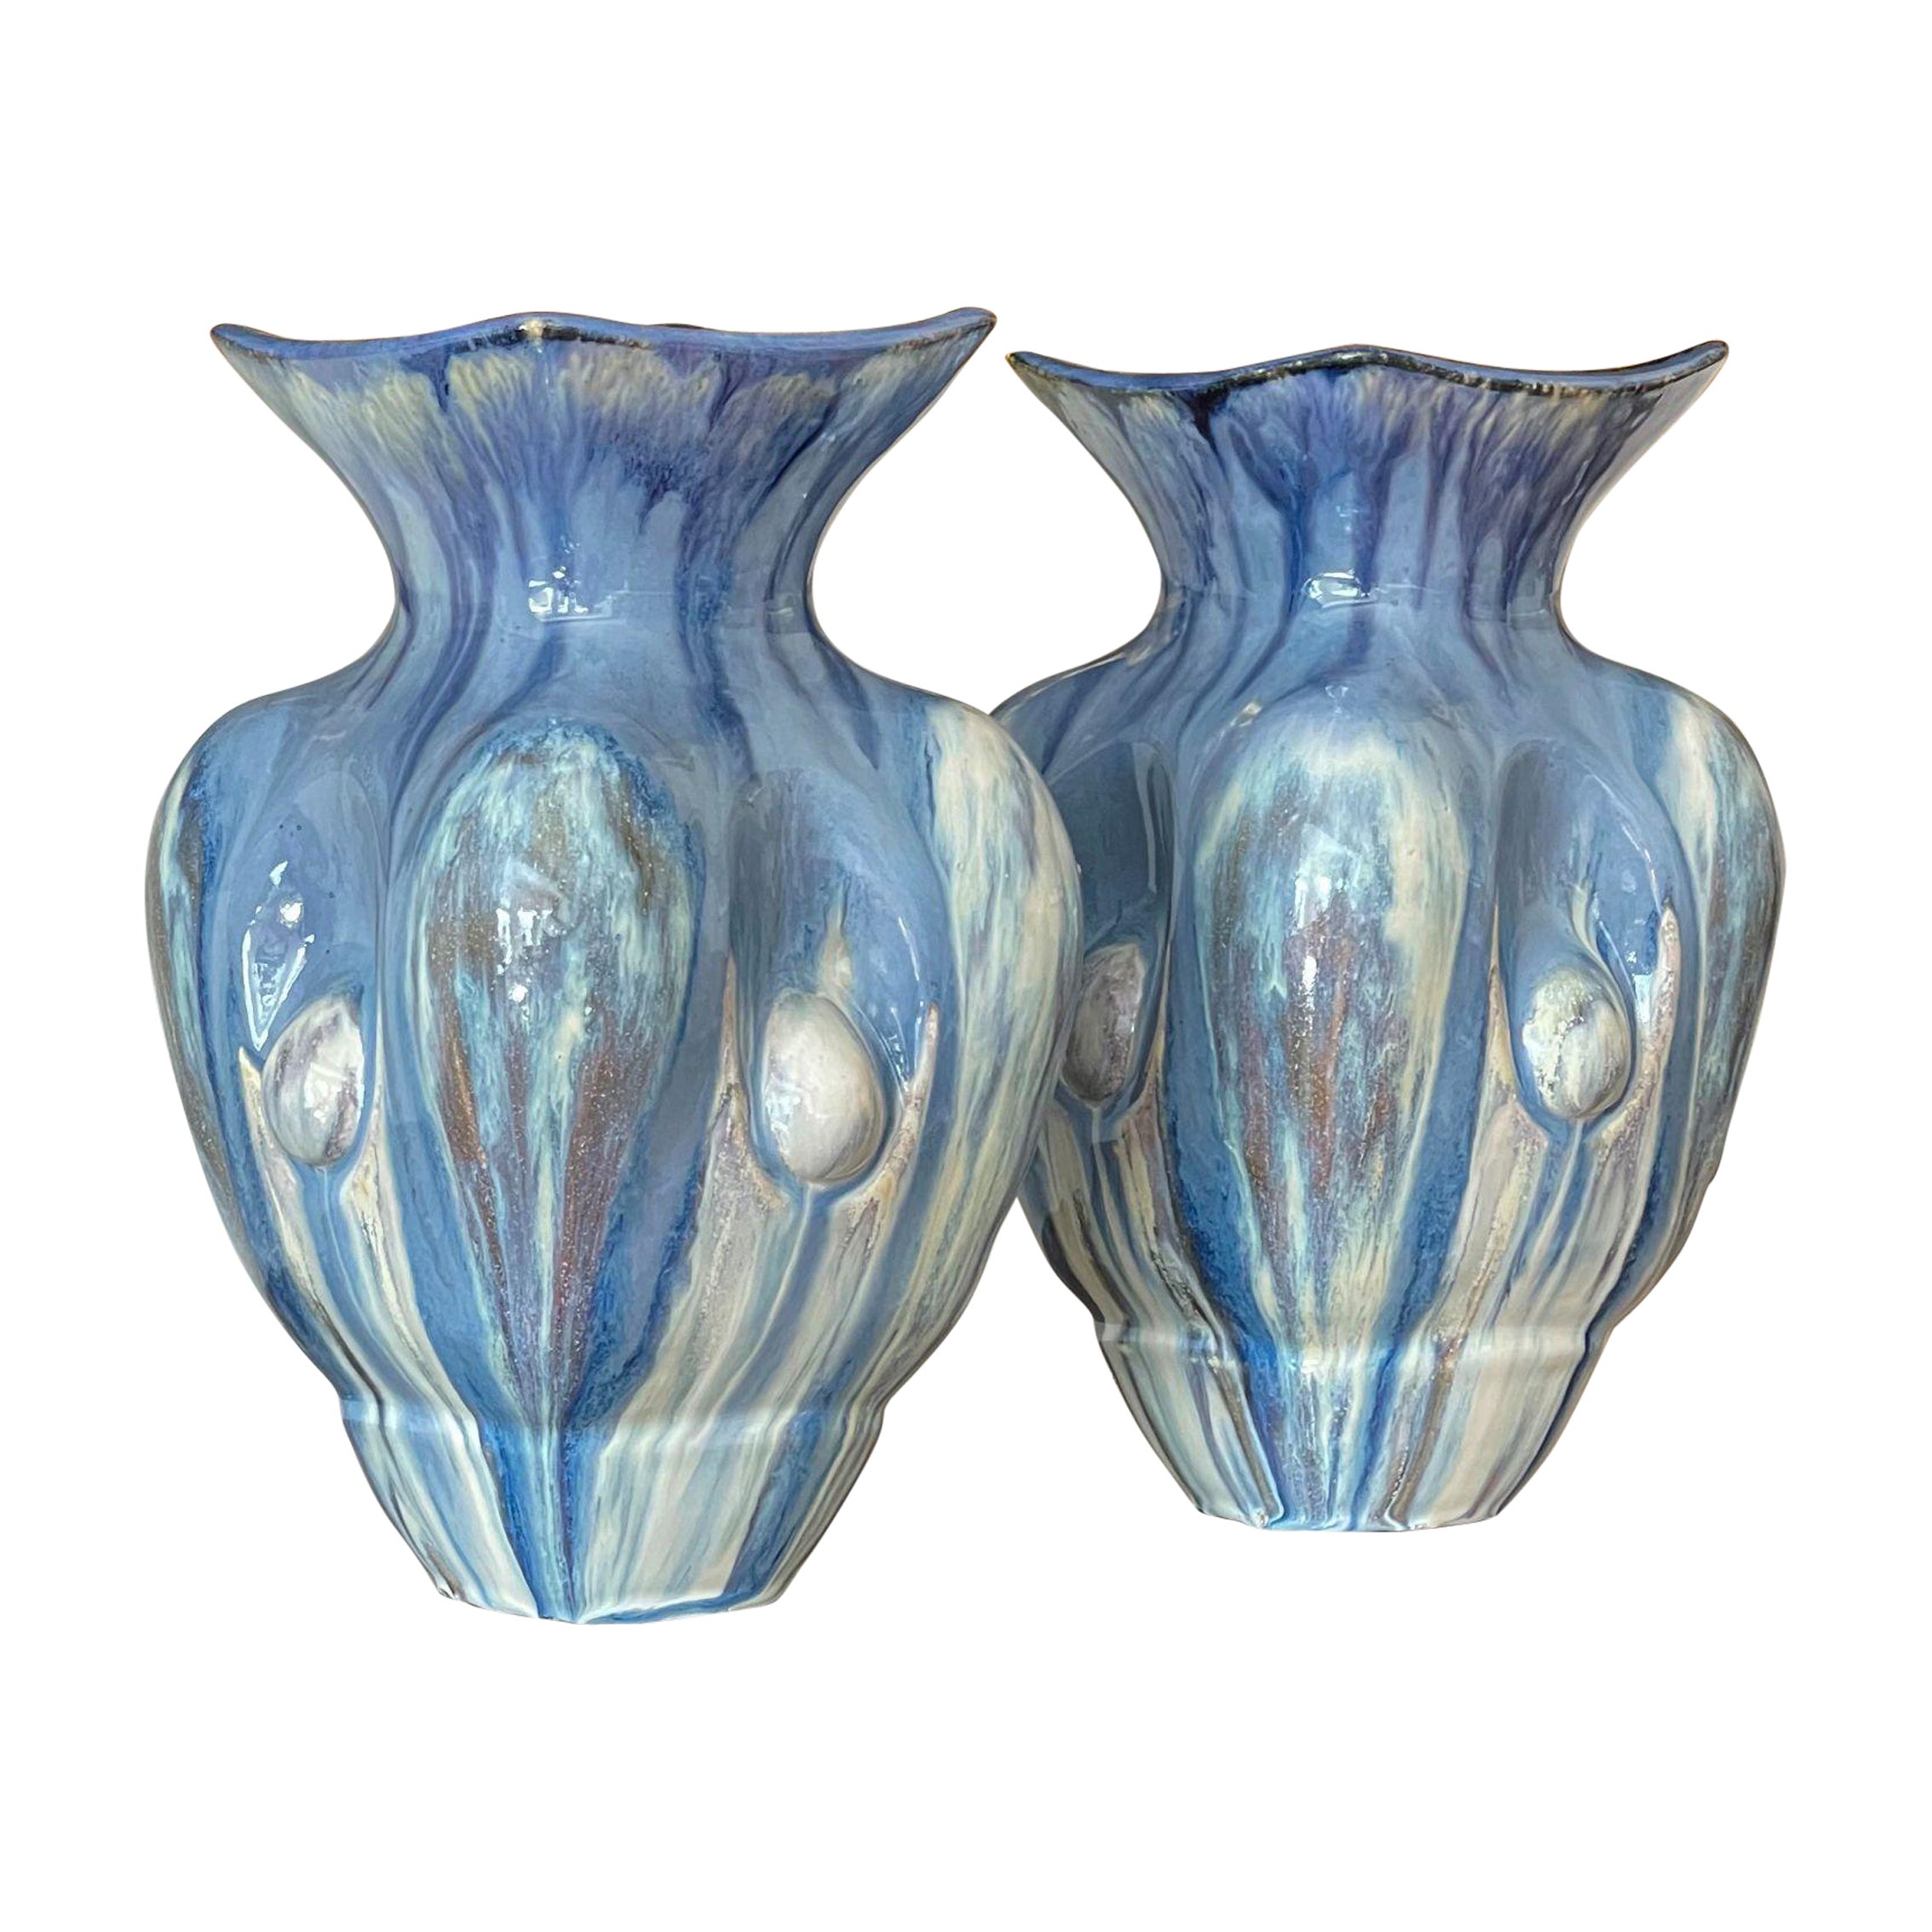 Pair of Sky Blue Ceramic Vases Contemporary 21st Century Italian Unique Piece For Sale